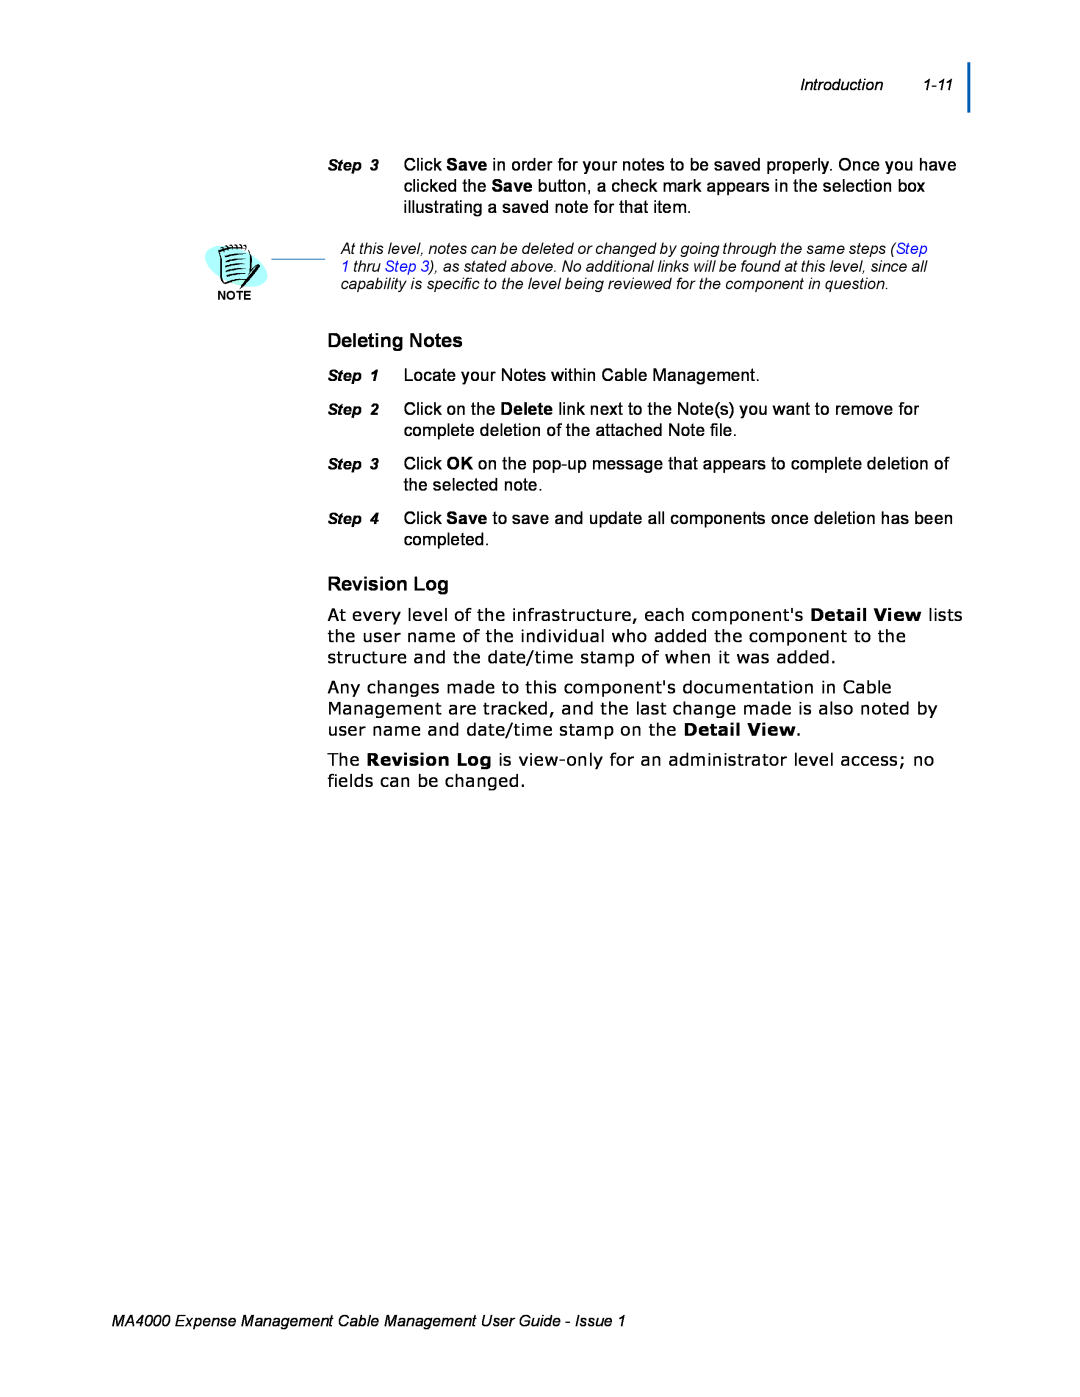 NEC MA4000 manual Deleting Notes, Revision Log 